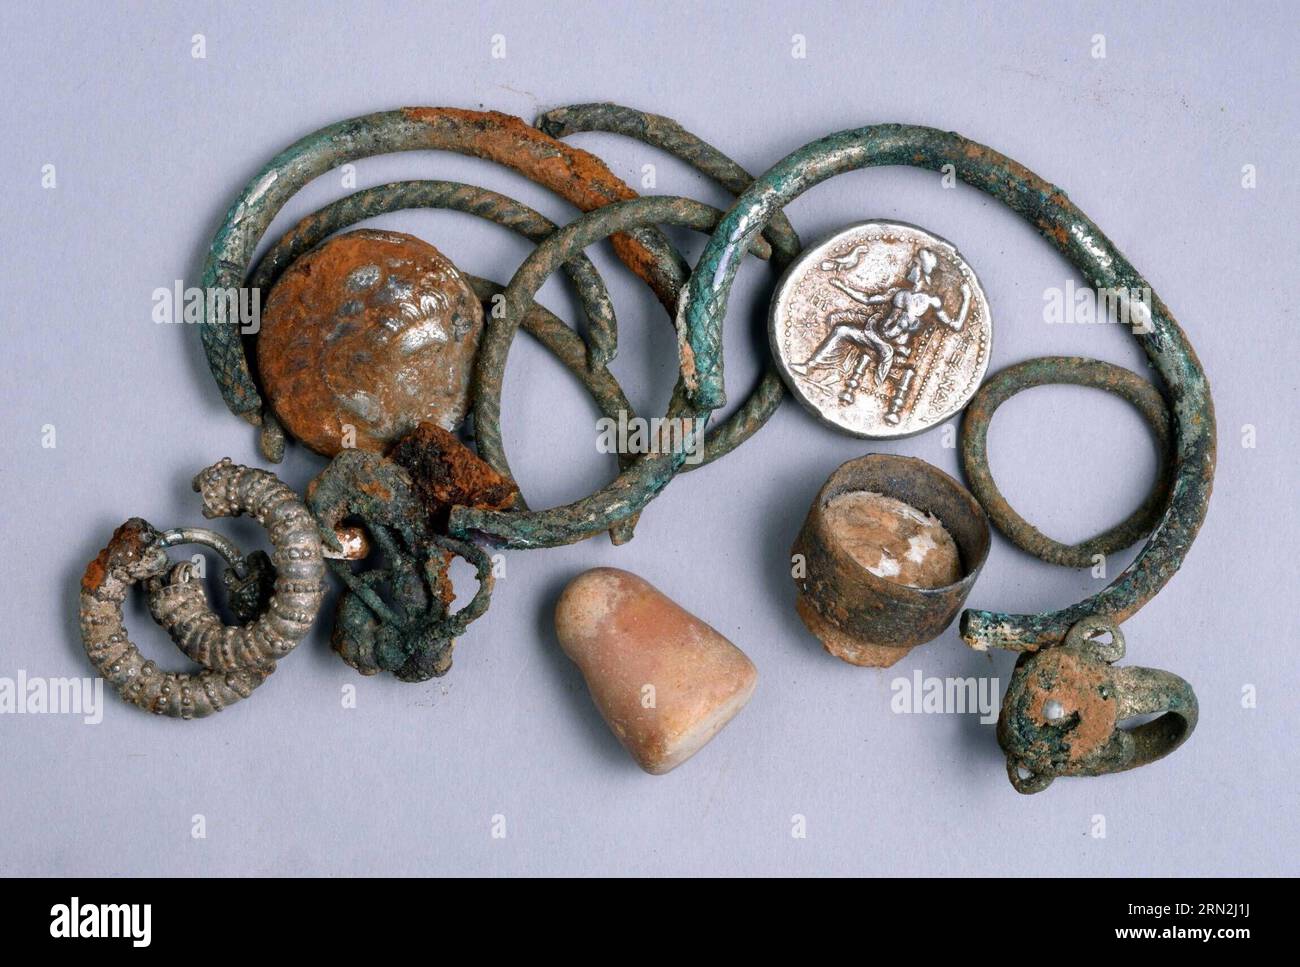 (150309) -- JÉRUSALEM, 9 mars 2015 -- une photographie non datée publiée par montre la cache d'objets en argent trouvés dans le nord d'Israël : deux pièces de monnaie d'Alexandre de Macédoine, trois bagues, quatre bracelets, deux boucles d'oreilles décorées, trois autres boucles d'oreilles (probablement en argent) et un petit poids en pierre. Des pièces de monnaie rares et des bijoux de l'époque d'Alexandre le Grand ont été trouvés par hasard dans une grotte dans le nord d'Israël, les fonctionnaires avec le dit le 9 mars 2015. La cache vieille de 2 300 ans comprend des pièces d'argent d'Alexandre le Grand, qui a conquis la région à la fin du IVe siècle av. J.-C.. En outre, plusieurs pi Banque D'Images